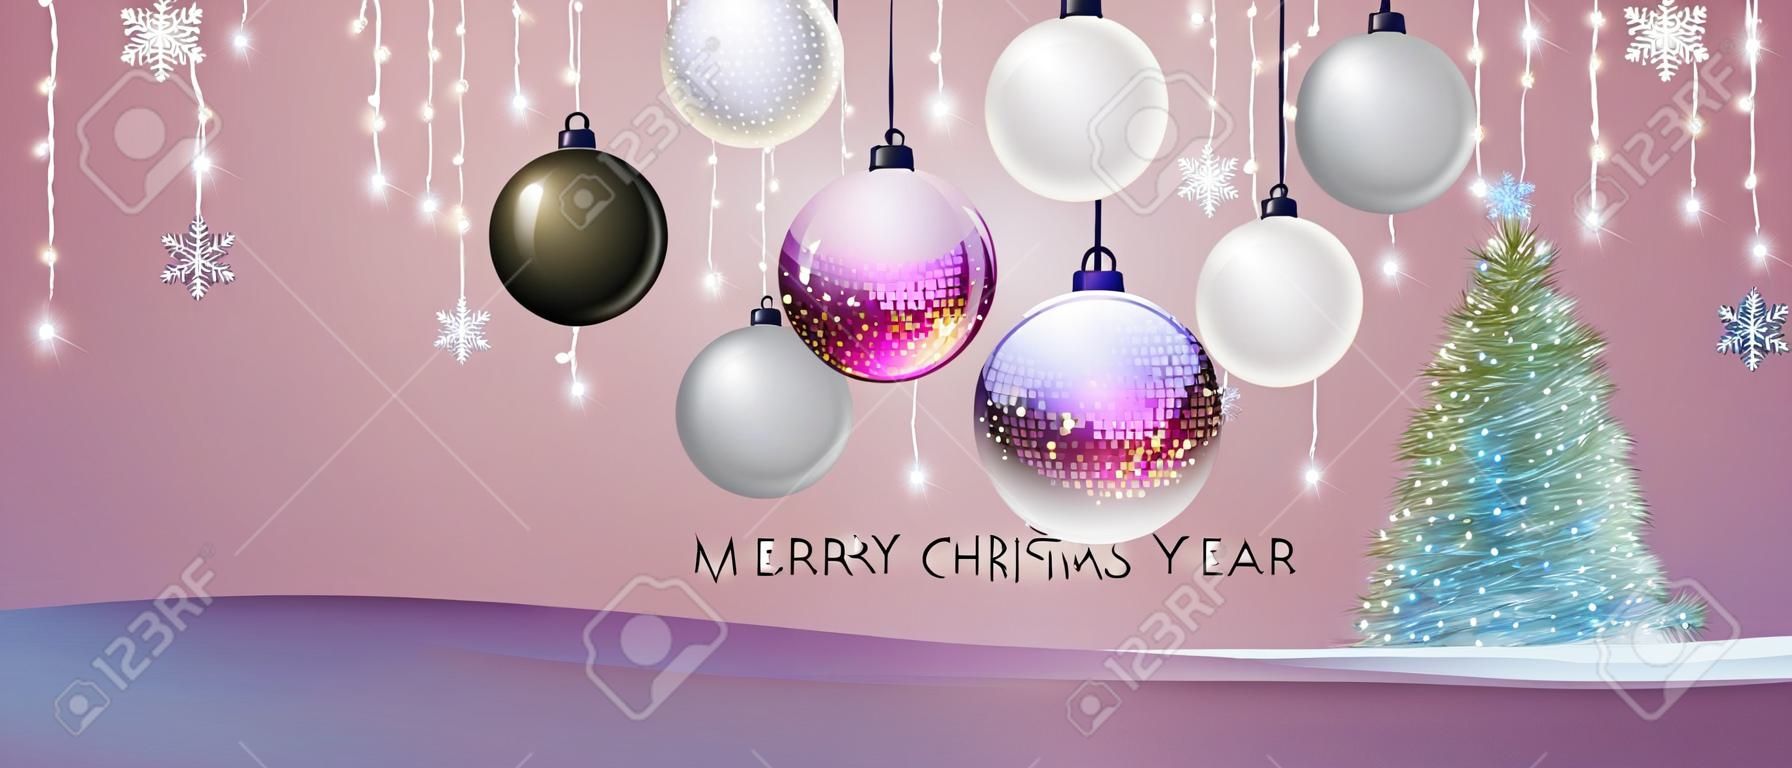 Wesołych świąt i szczęśliwego nowego roku plakat z dekoracjami świątecznymi. tło wakacje boże narodzenie. ilustracja wektorowa